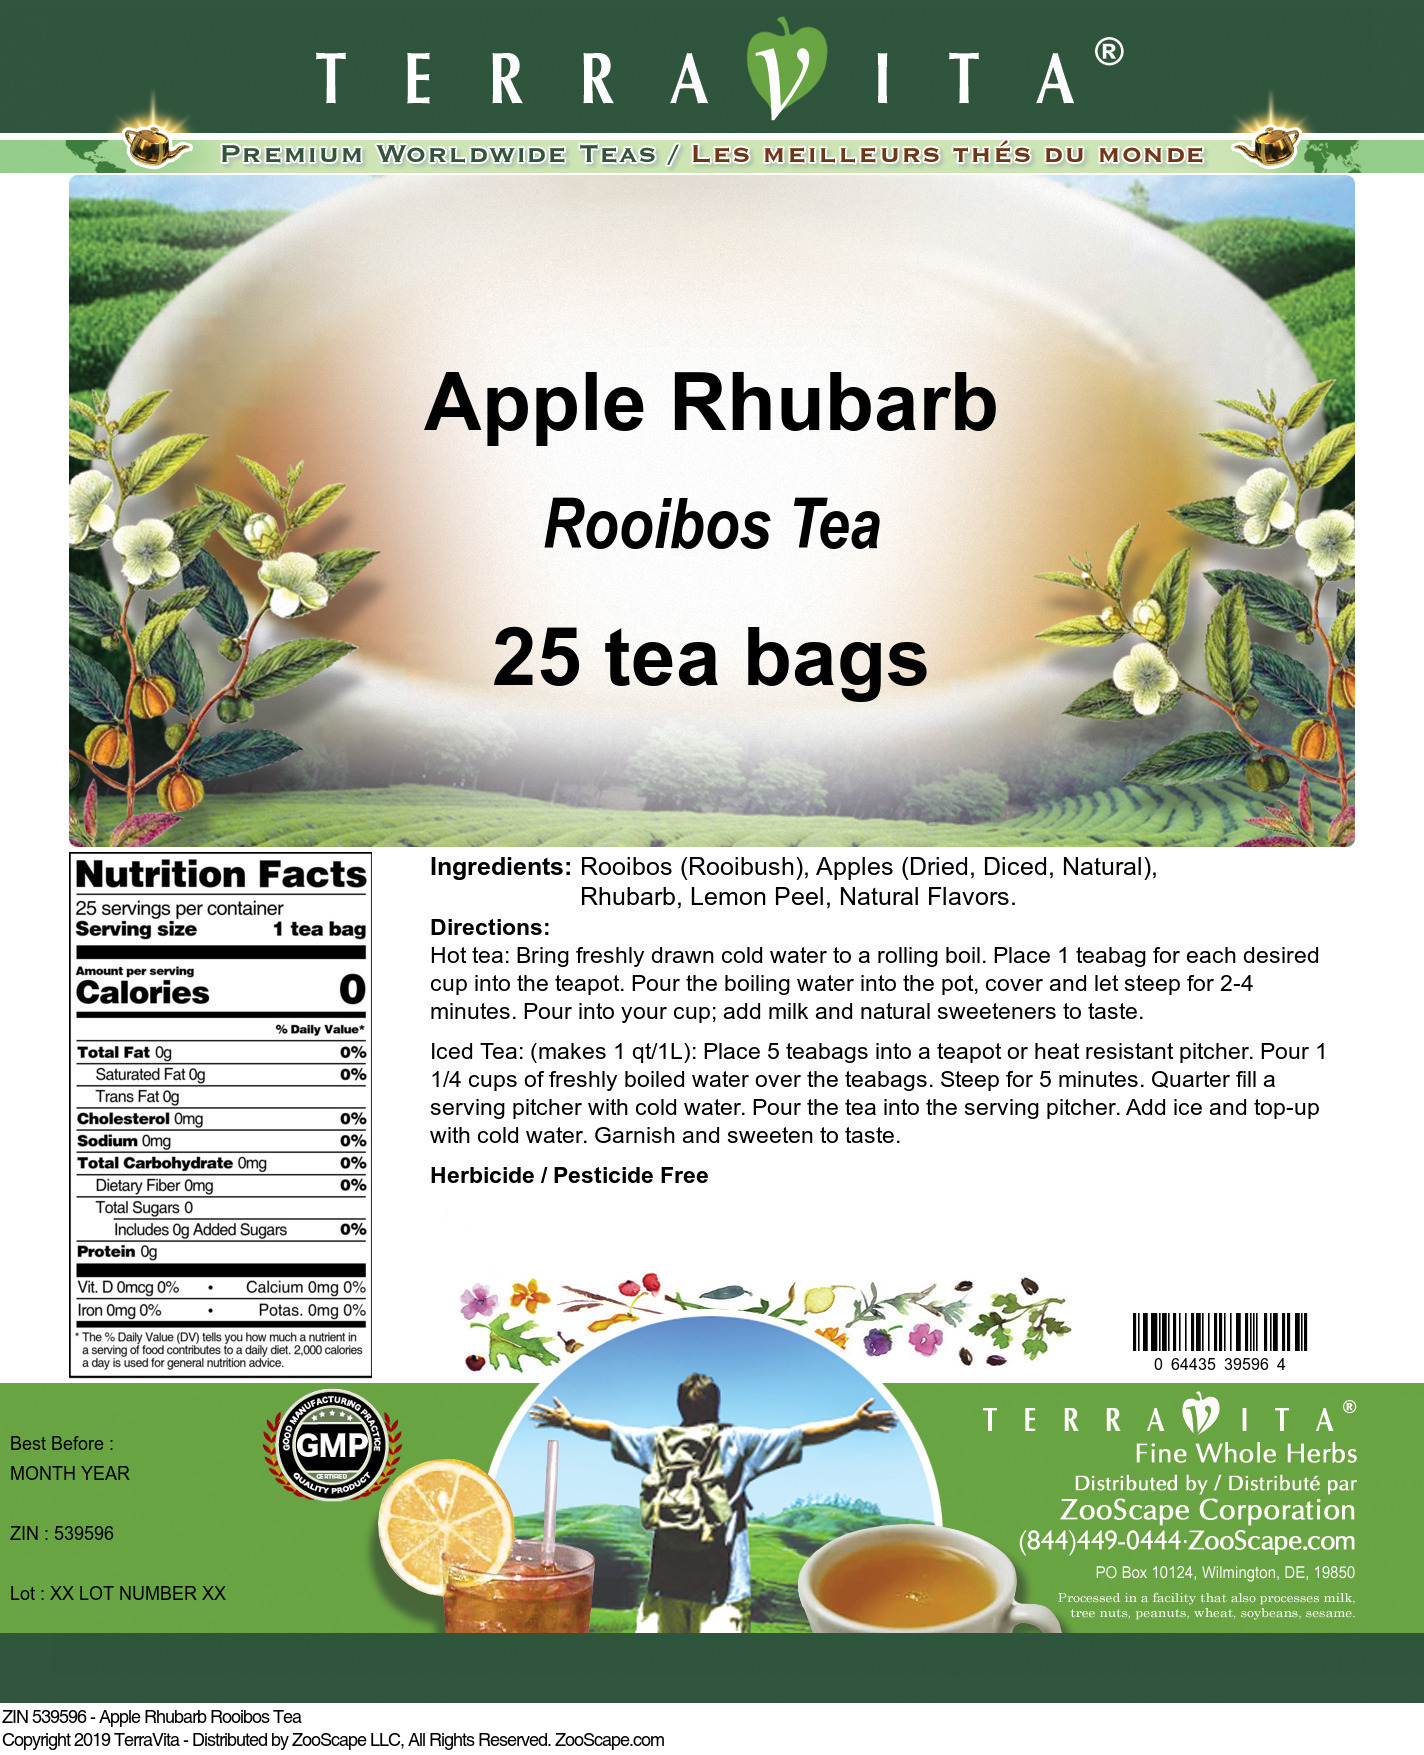 Apple Rhubarb Rooibos Tea - Label